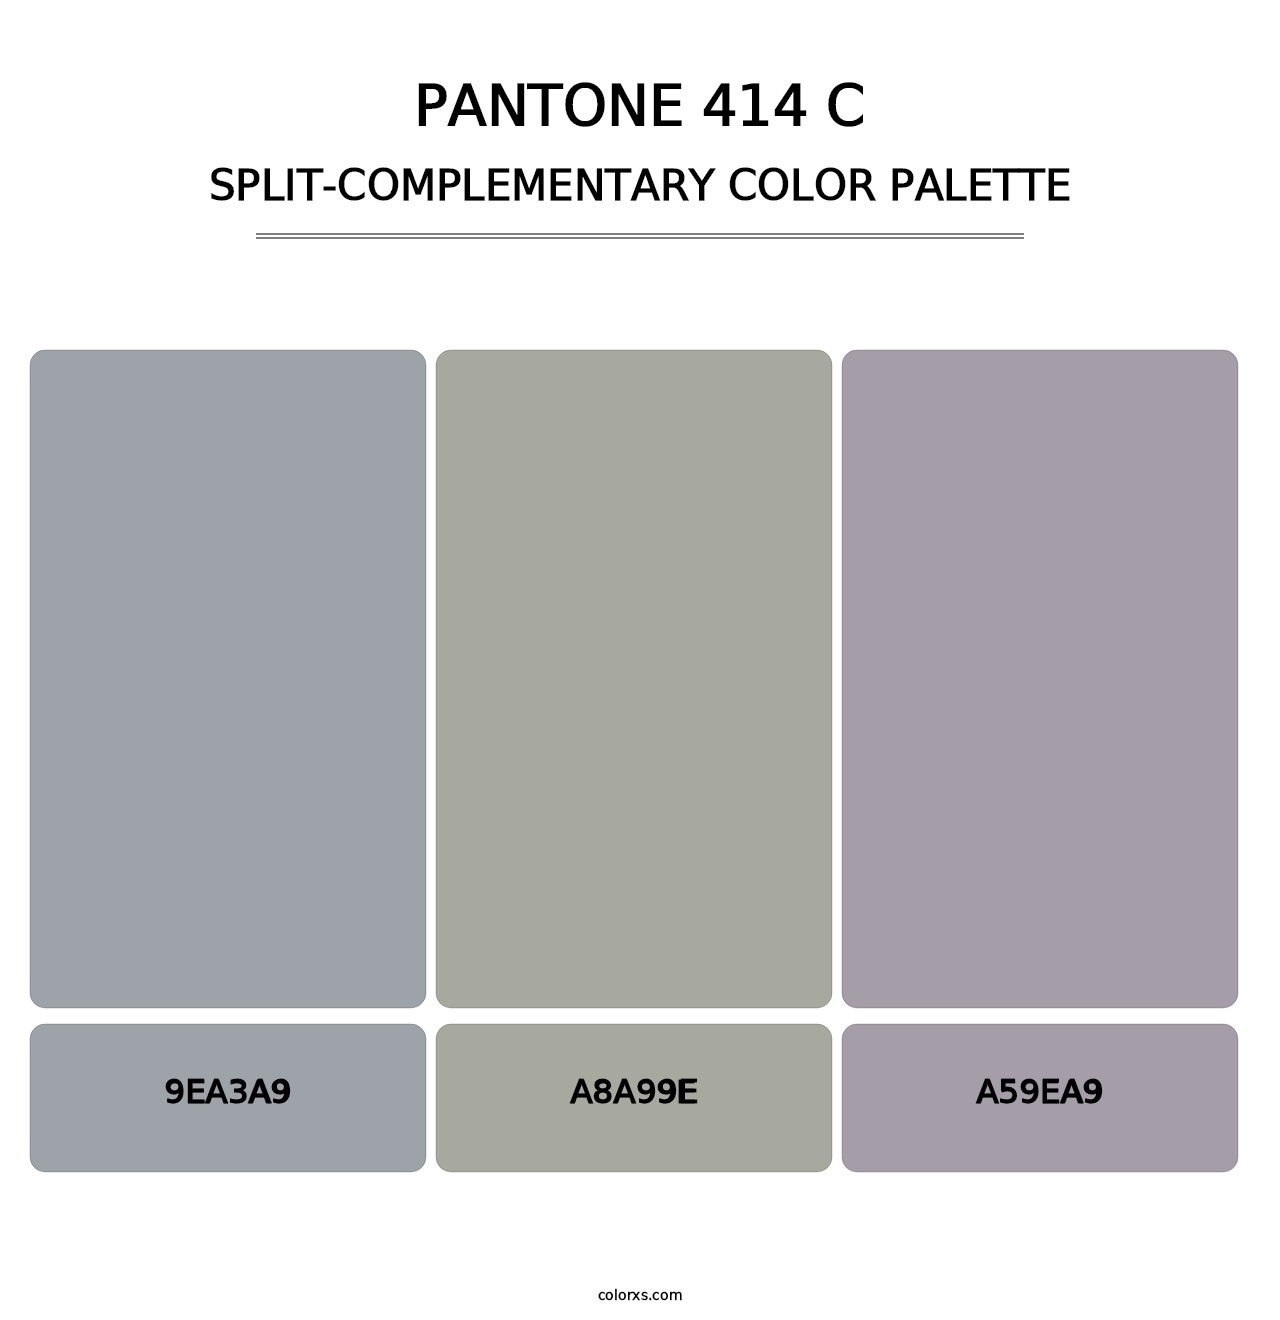 PANTONE 414 C - Split-Complementary Color Palette